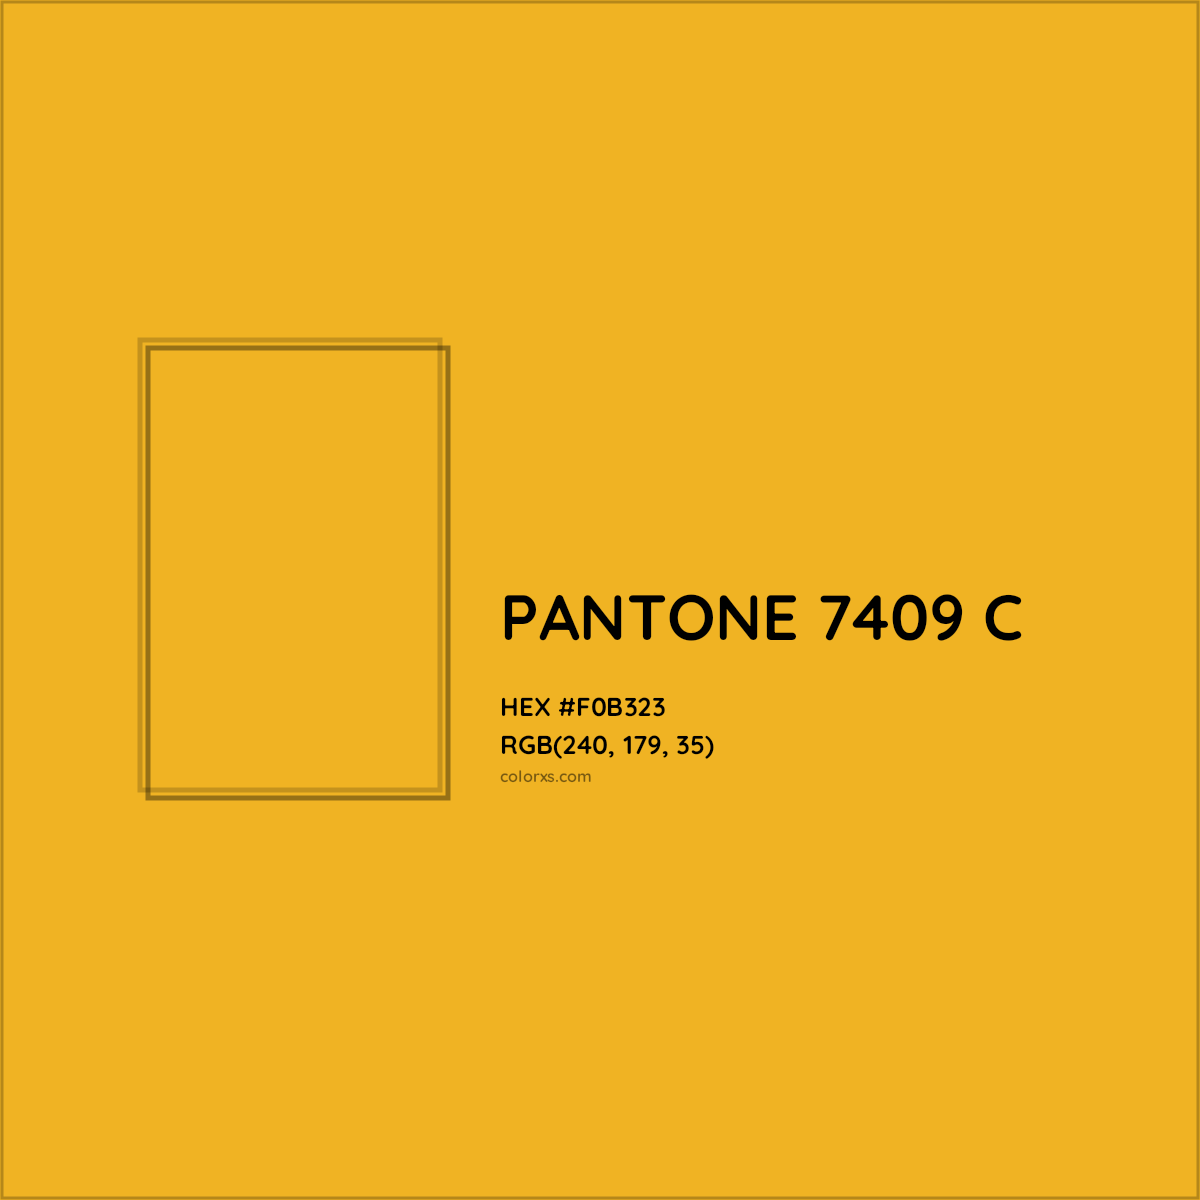 HEX #F0B323 PANTONE 7409 C CMS Pantone PMS - Color Code